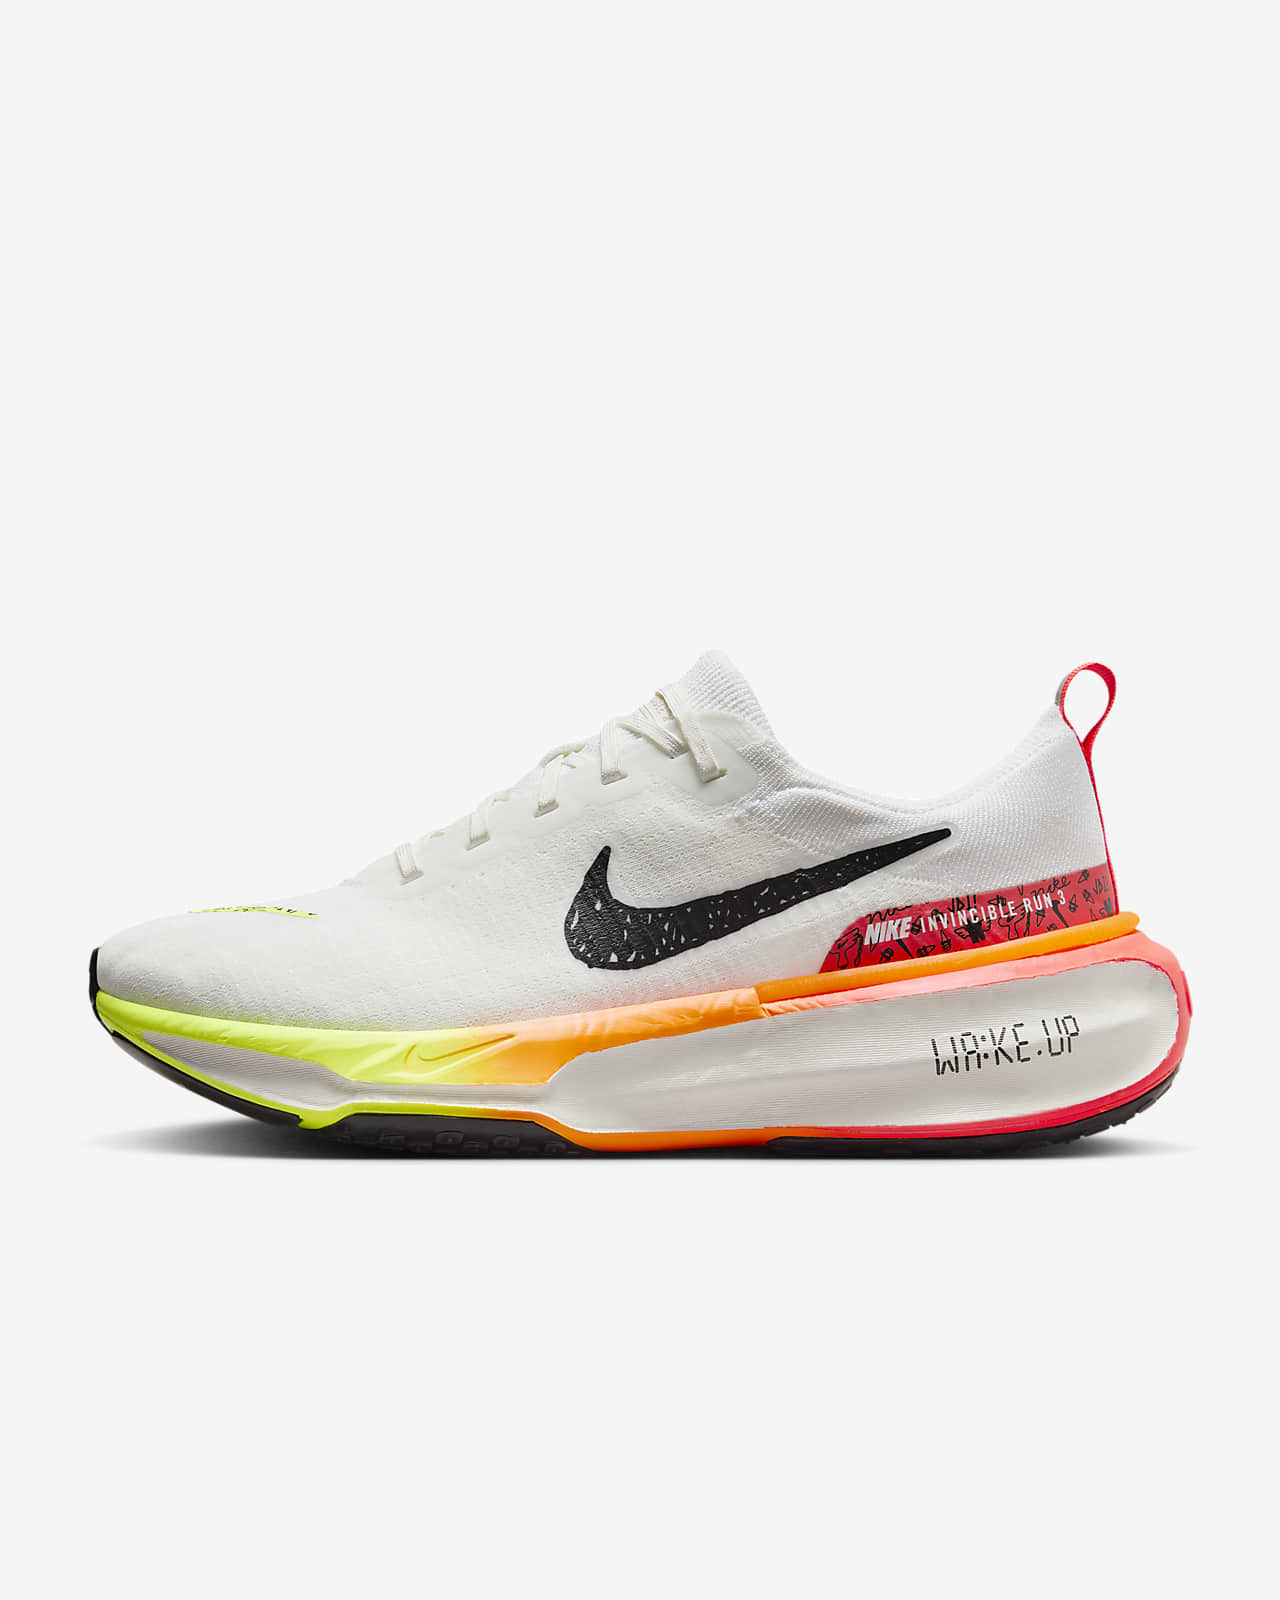 Nike Invincible 3 Erkek Yol Koşu Ayakkabısı